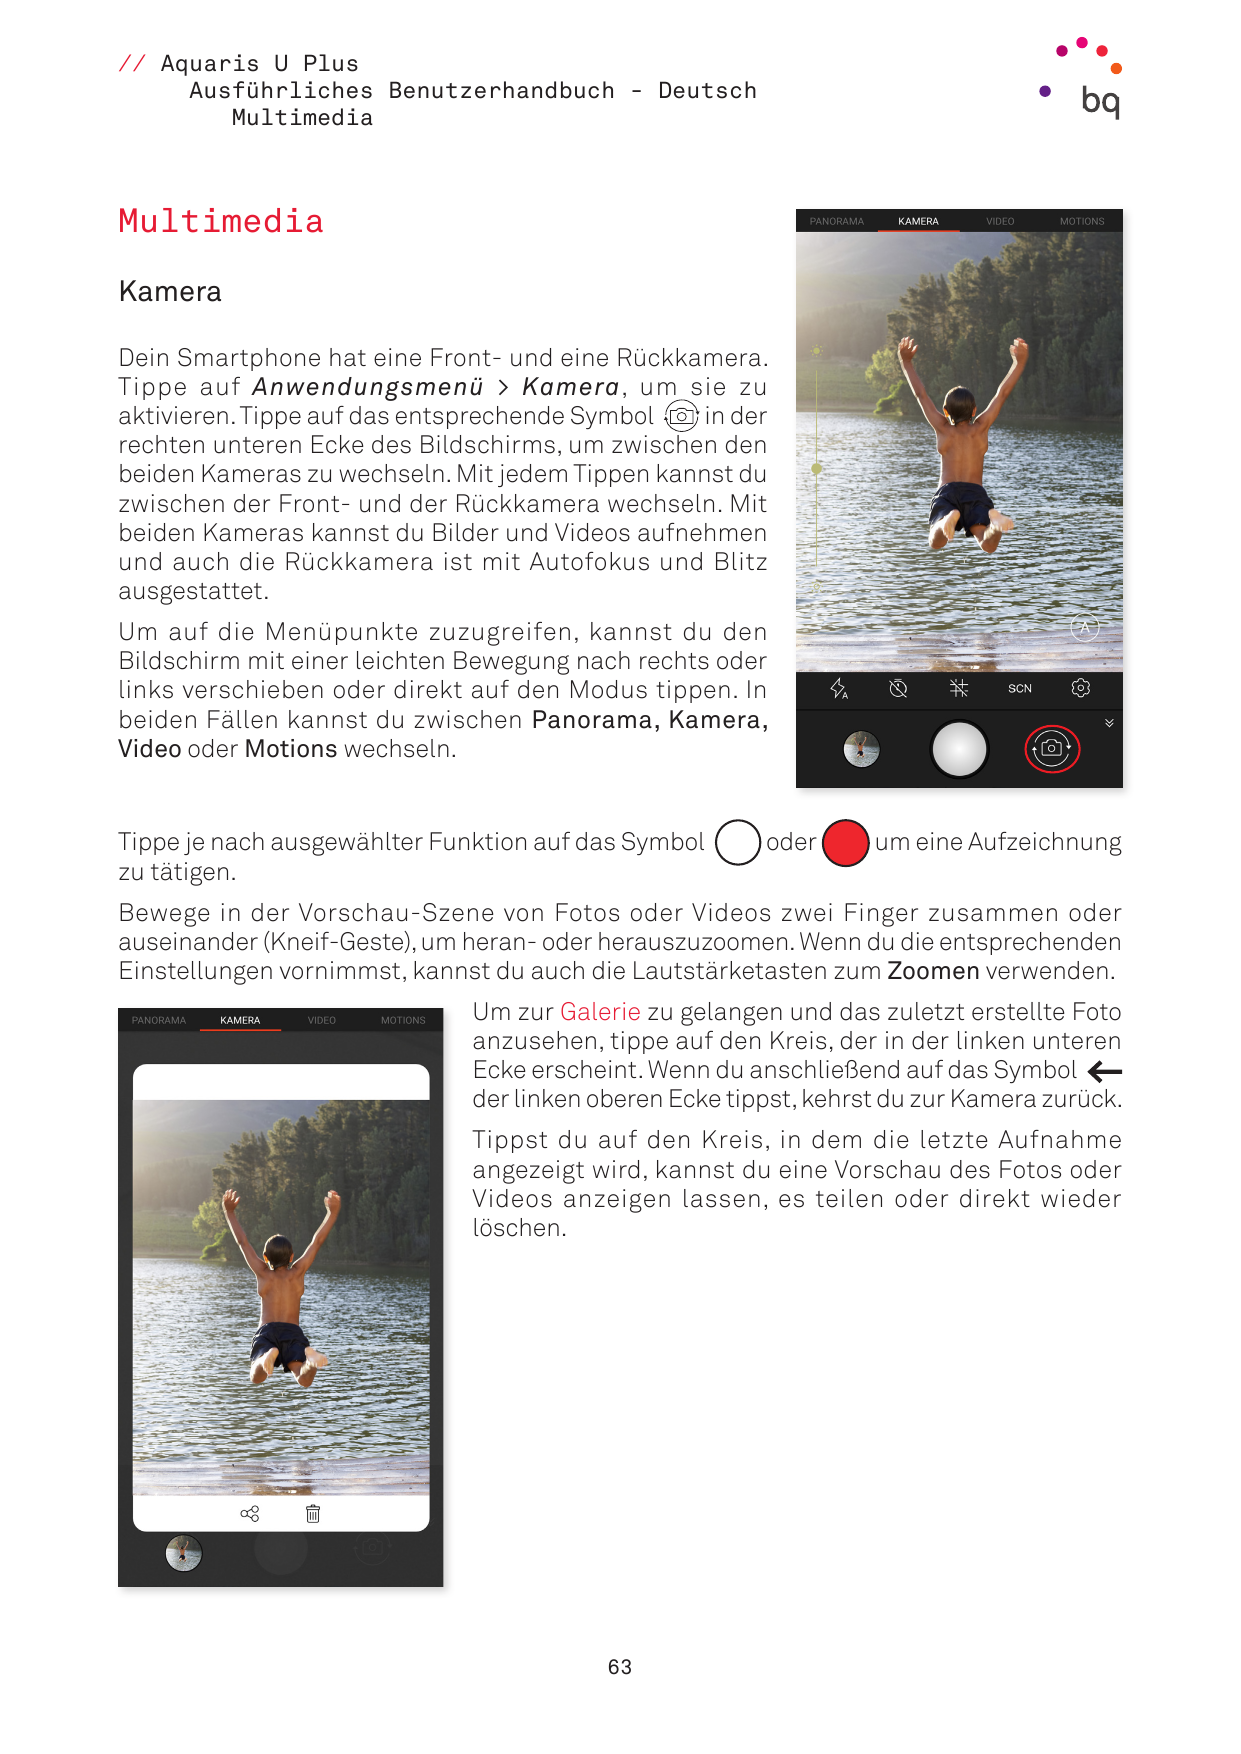 // Aquaris U PlusAusführliches Benutzerhandbuch - DeutschMultimediaMultimediaKameraDein Smartphone hat eine Front- und eine Rück